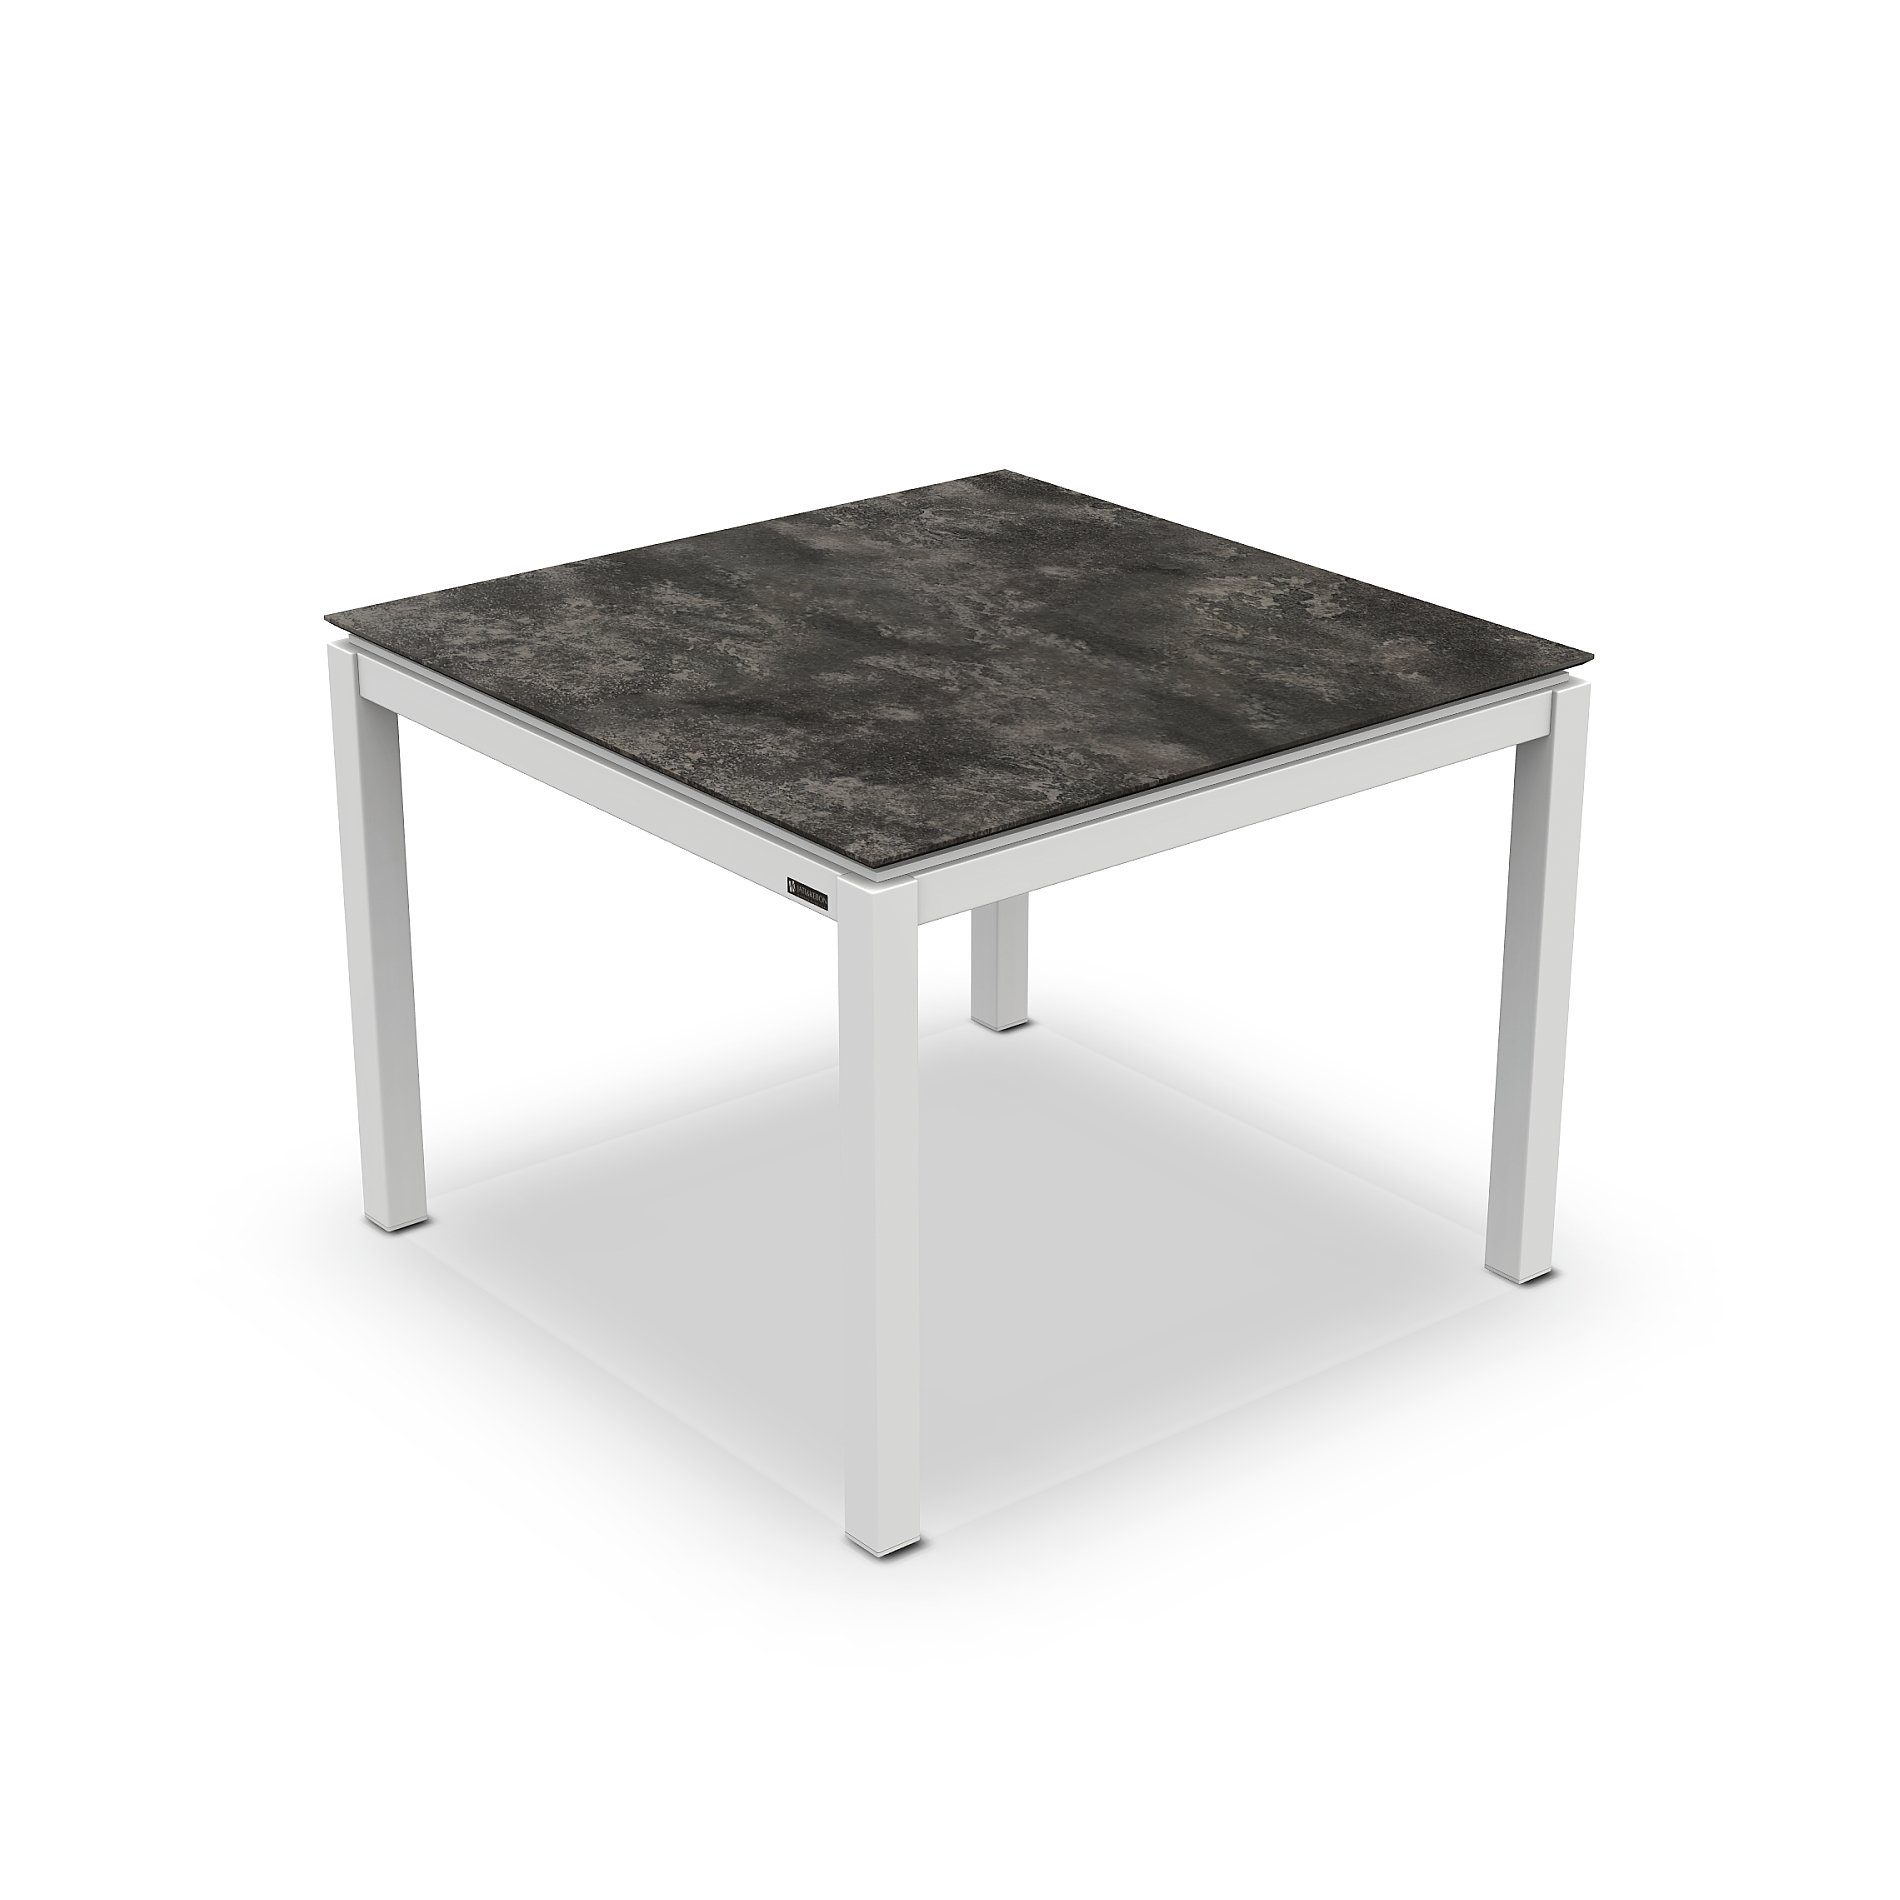 Jati&Kebon Gartentisch “Lugo“, Gestell Aluminium weiß, Tischplatte HPL Granit dunkelgrau, 90x90 cm